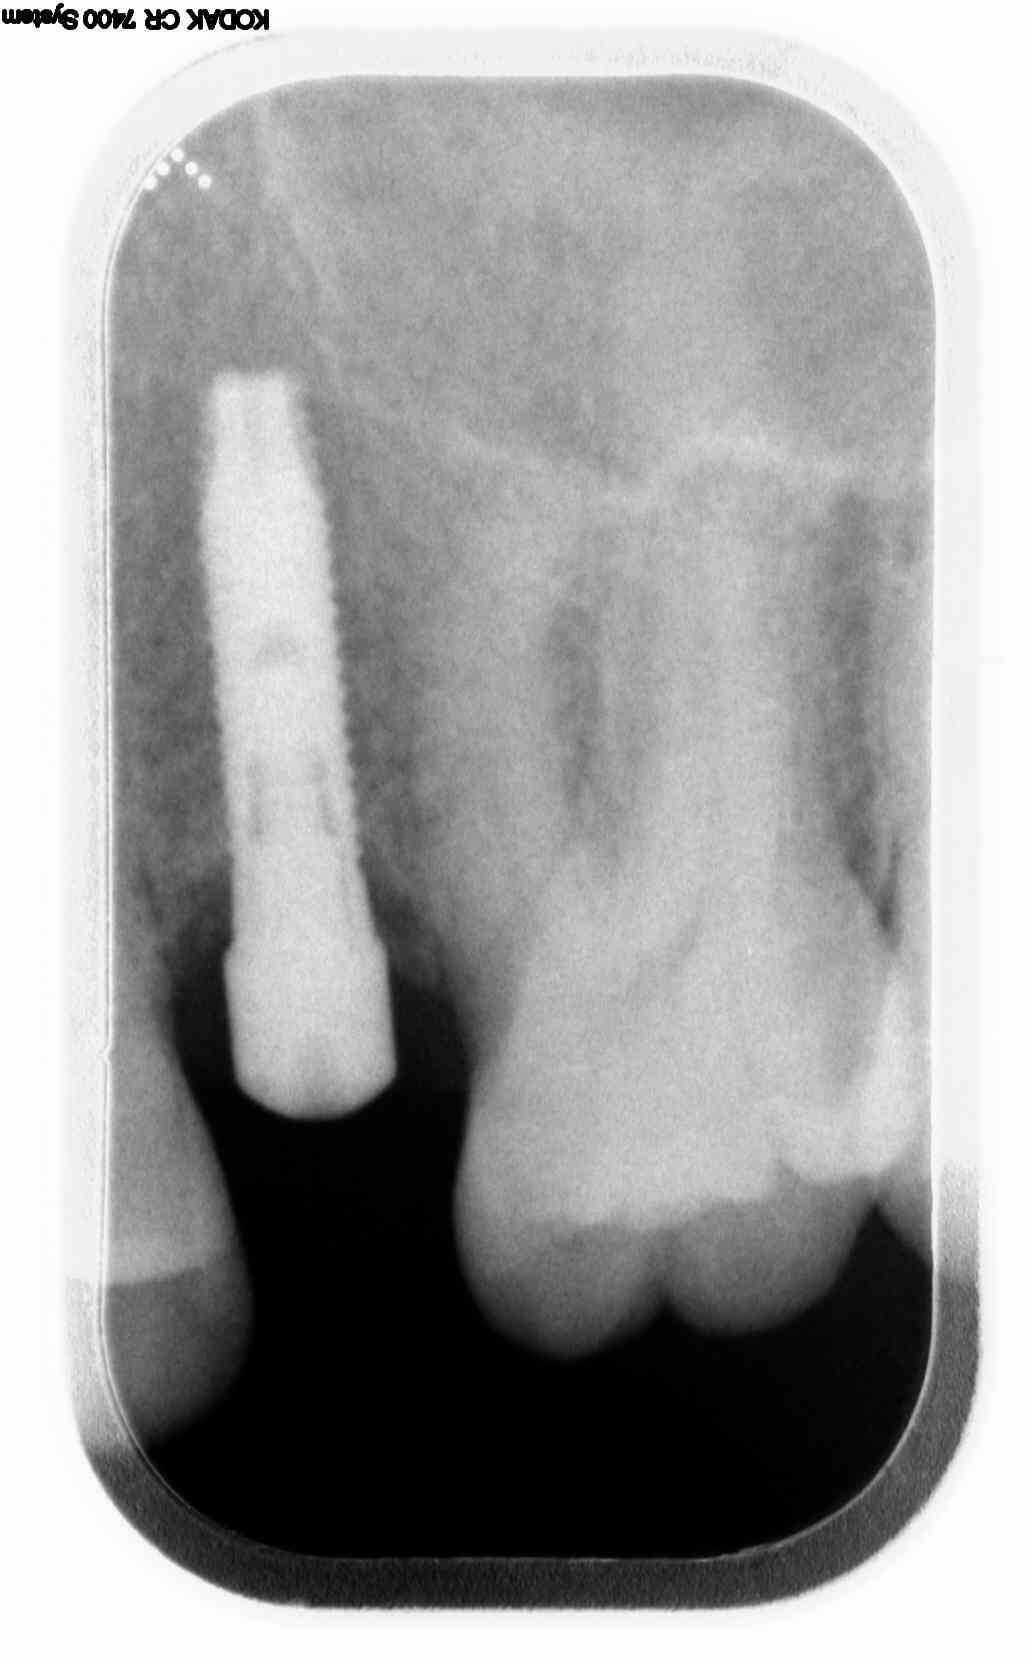 Un paio di anni fa ho inserito un impianto osseo per poi mettere il dente definitivo sostitutivo